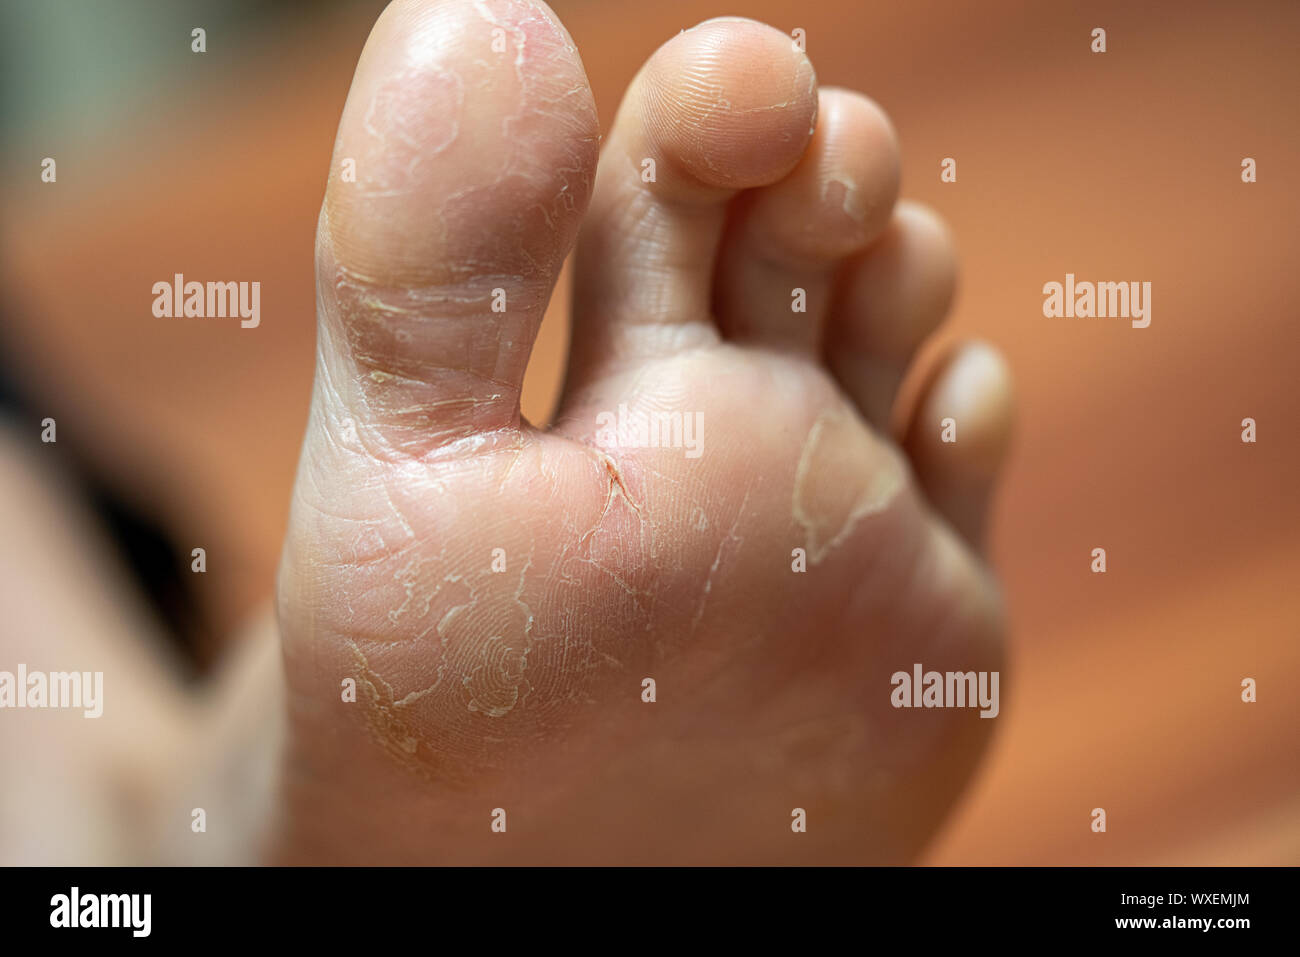 Auf einem Fuß die Haut löst, Ekzem Stockfotografie - Alamy